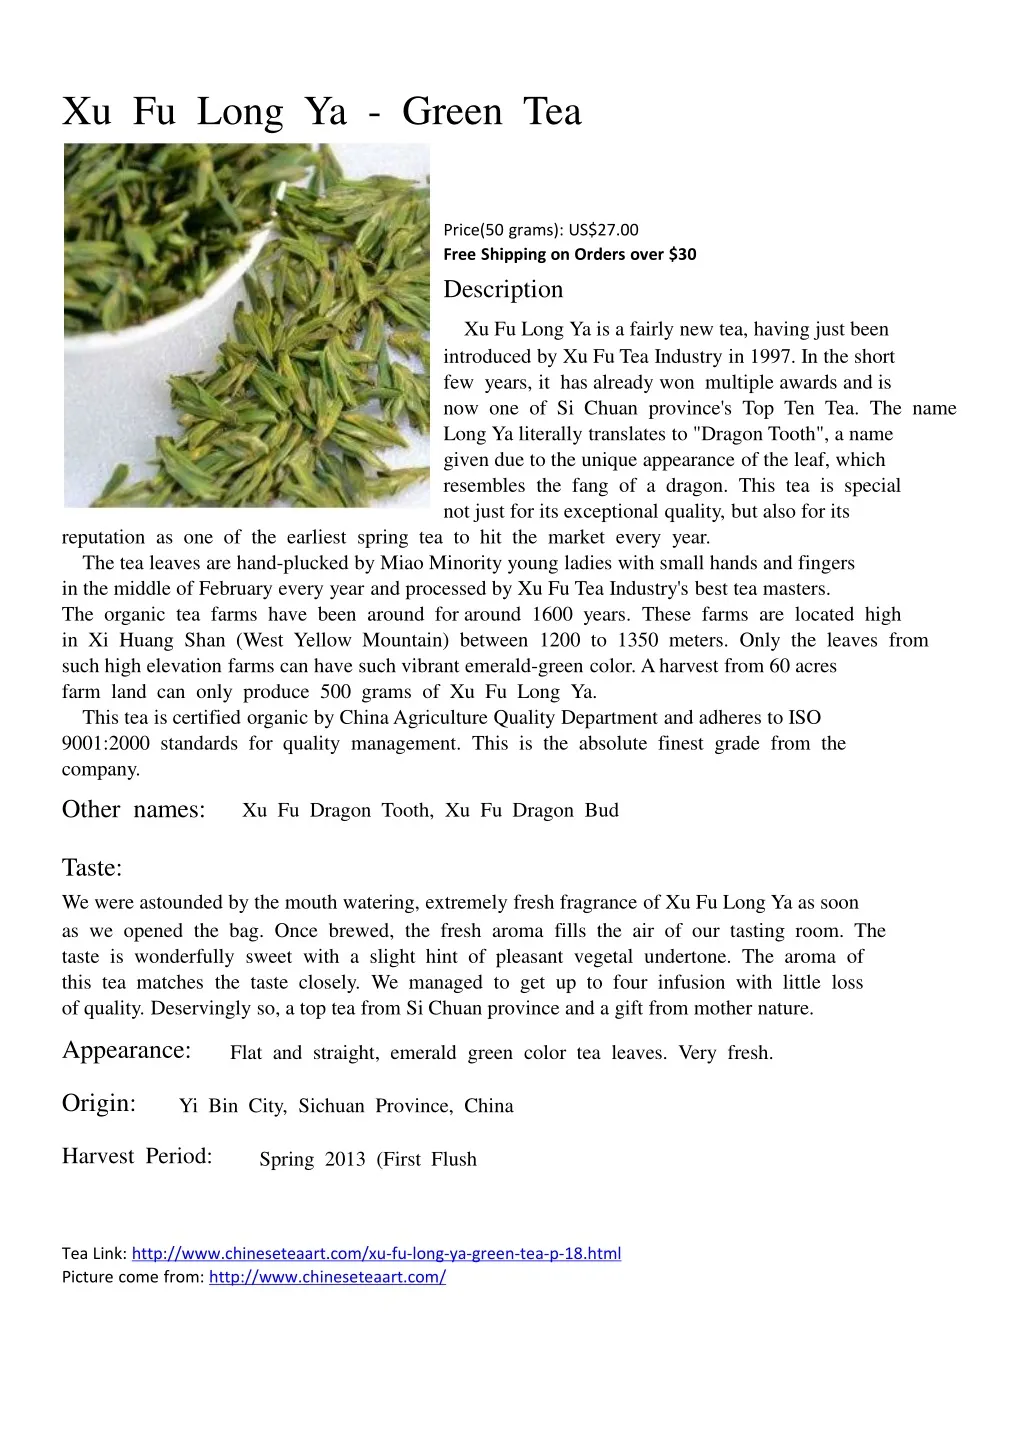 xu fu long ya green tea price 50 grams